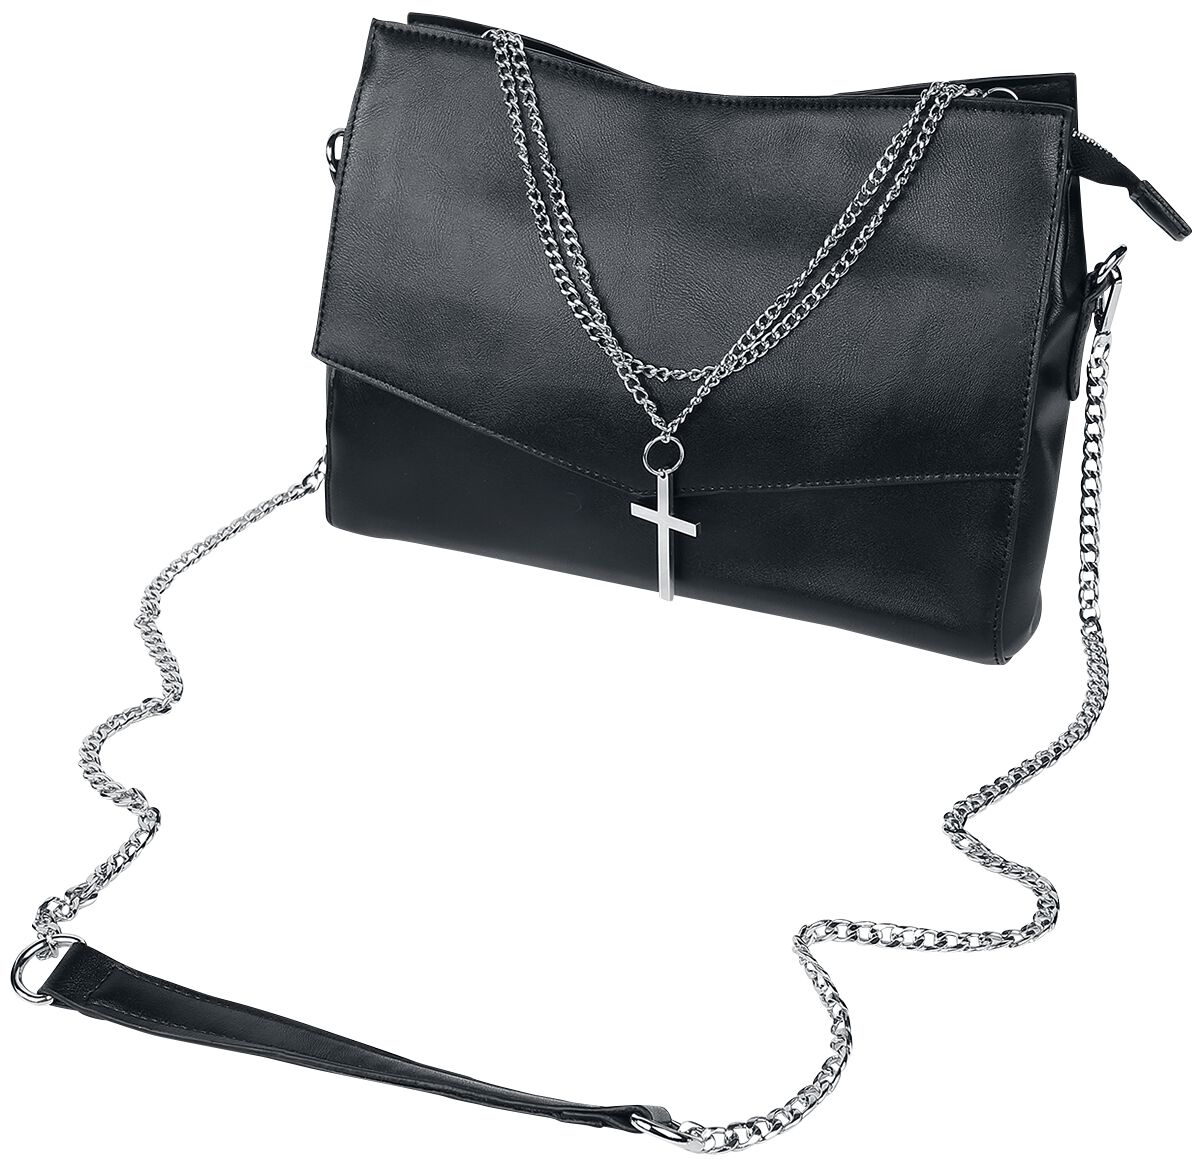 Banned Alternative - Gothic Handtasche - Nether - für Damen - schwarz